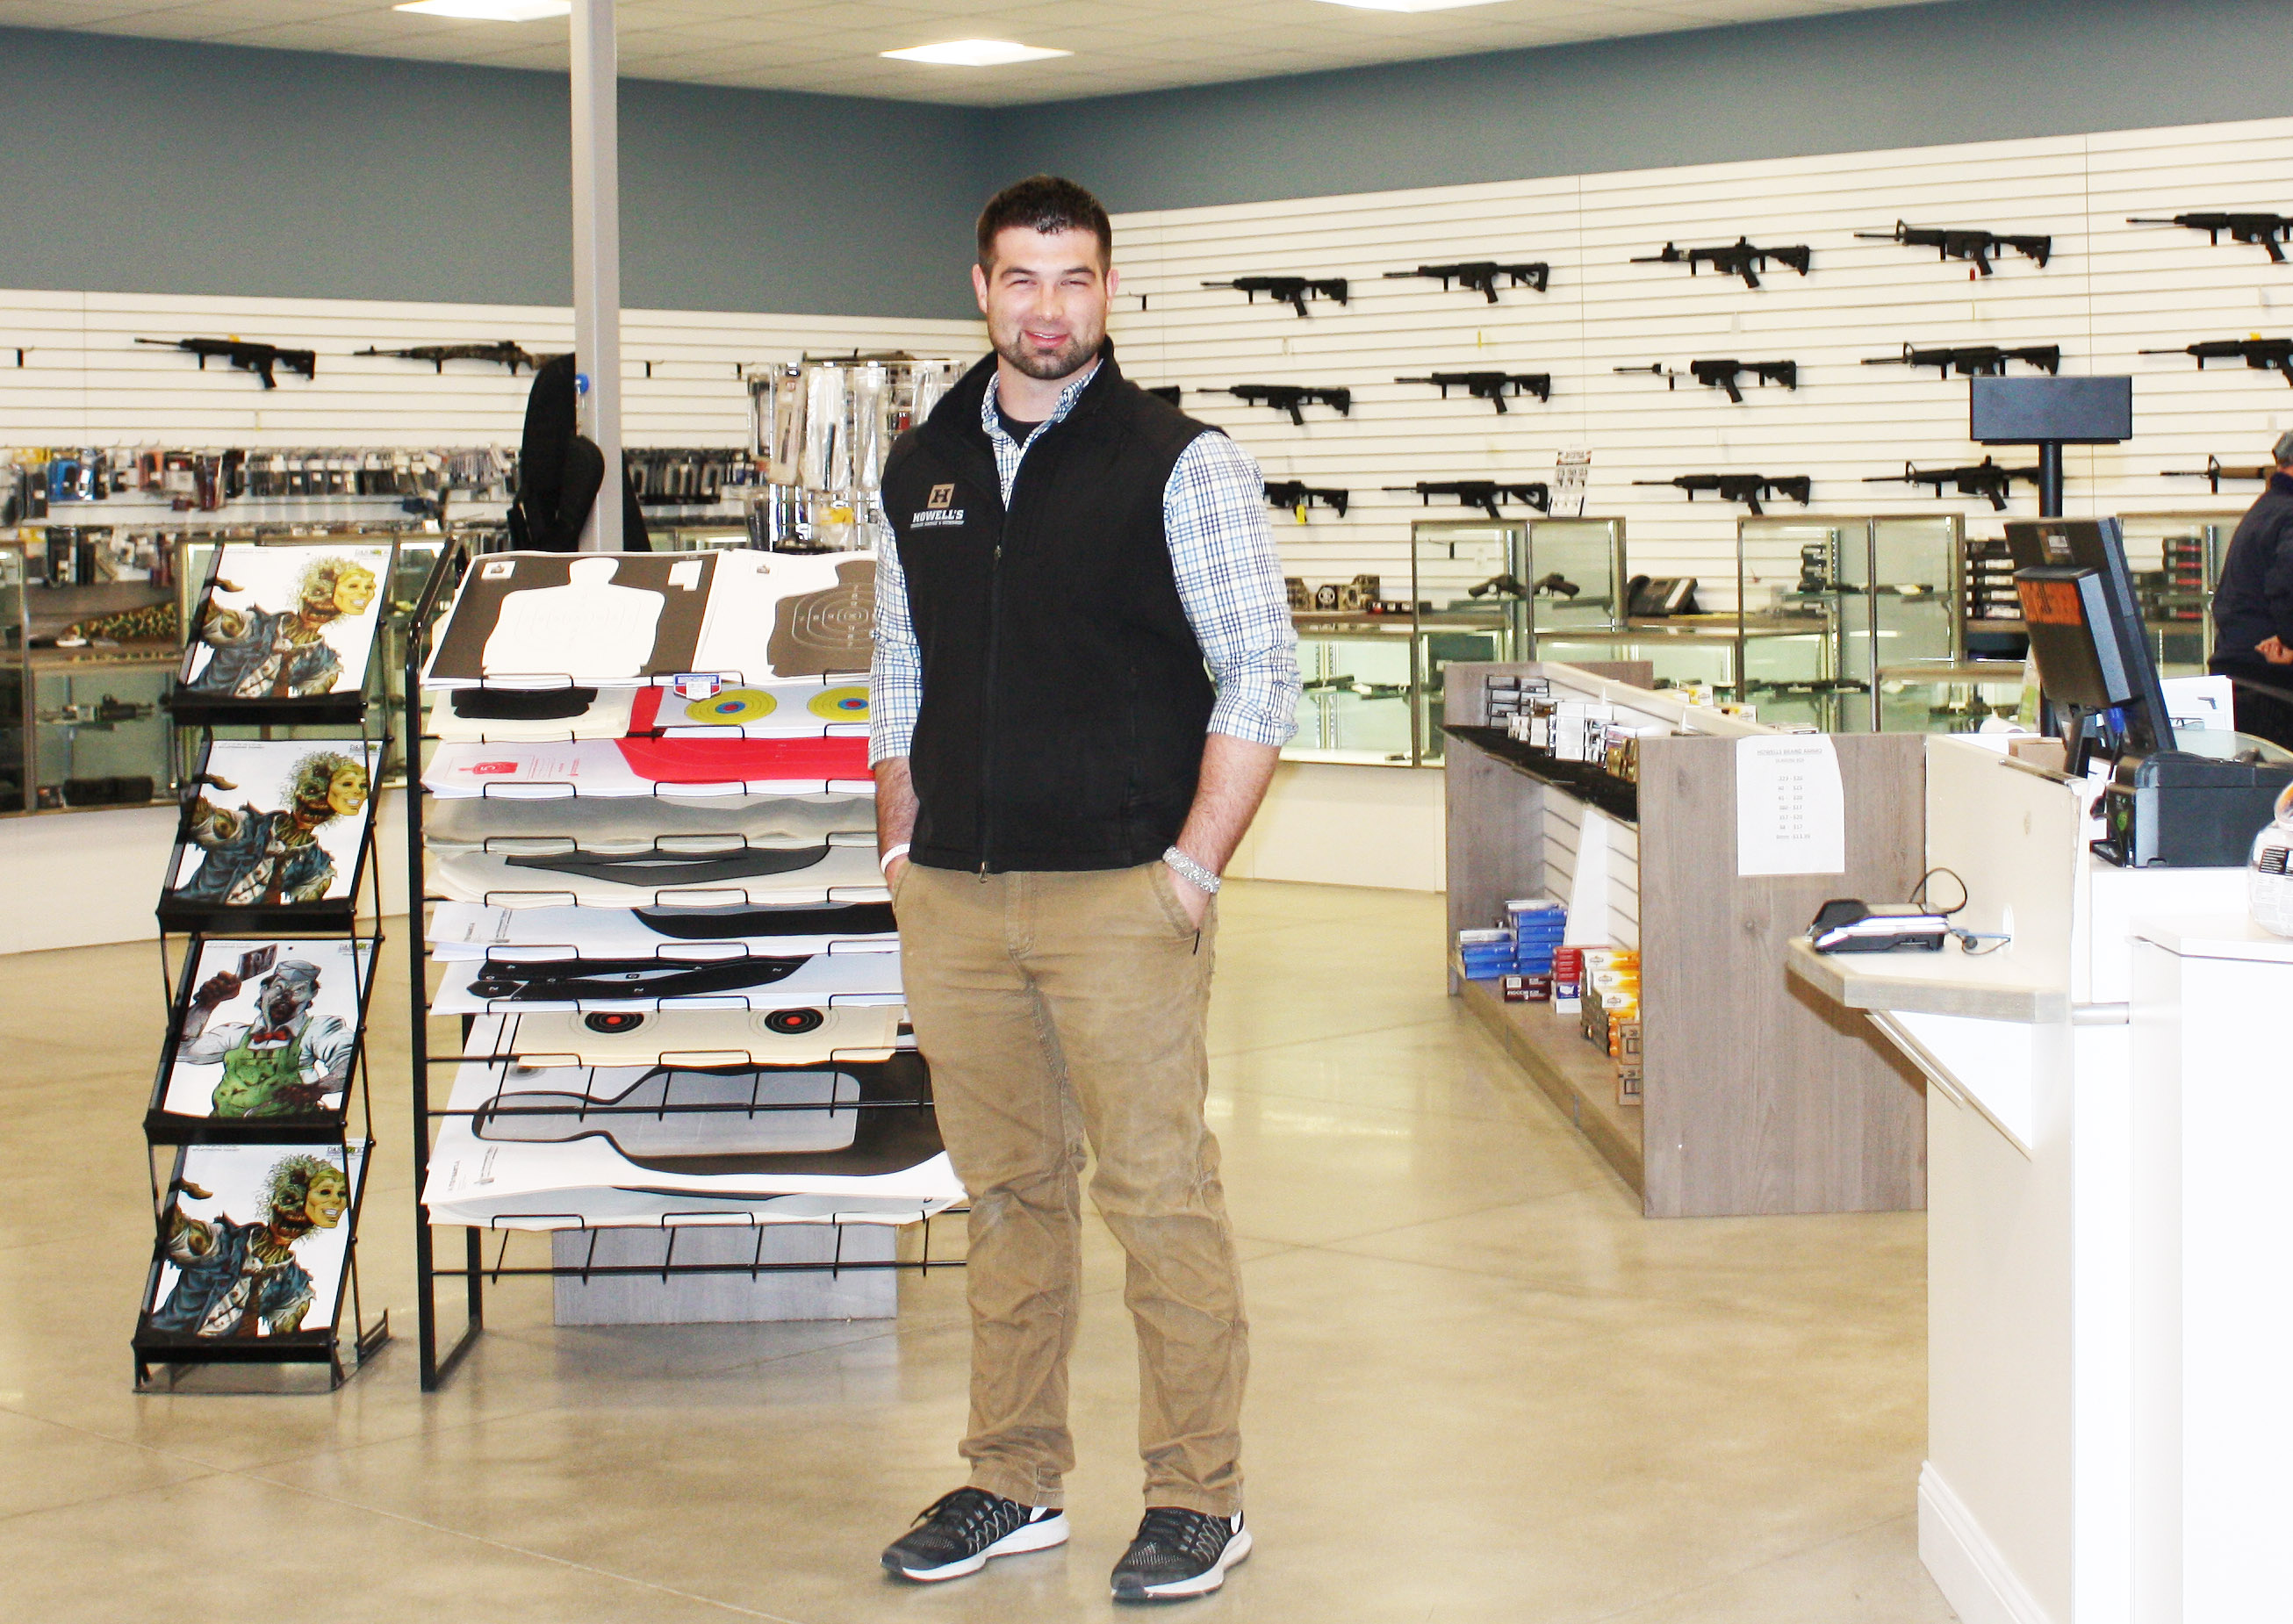 Maine SBDC Success Stories: Howell's Indoor Range & Gun Shop